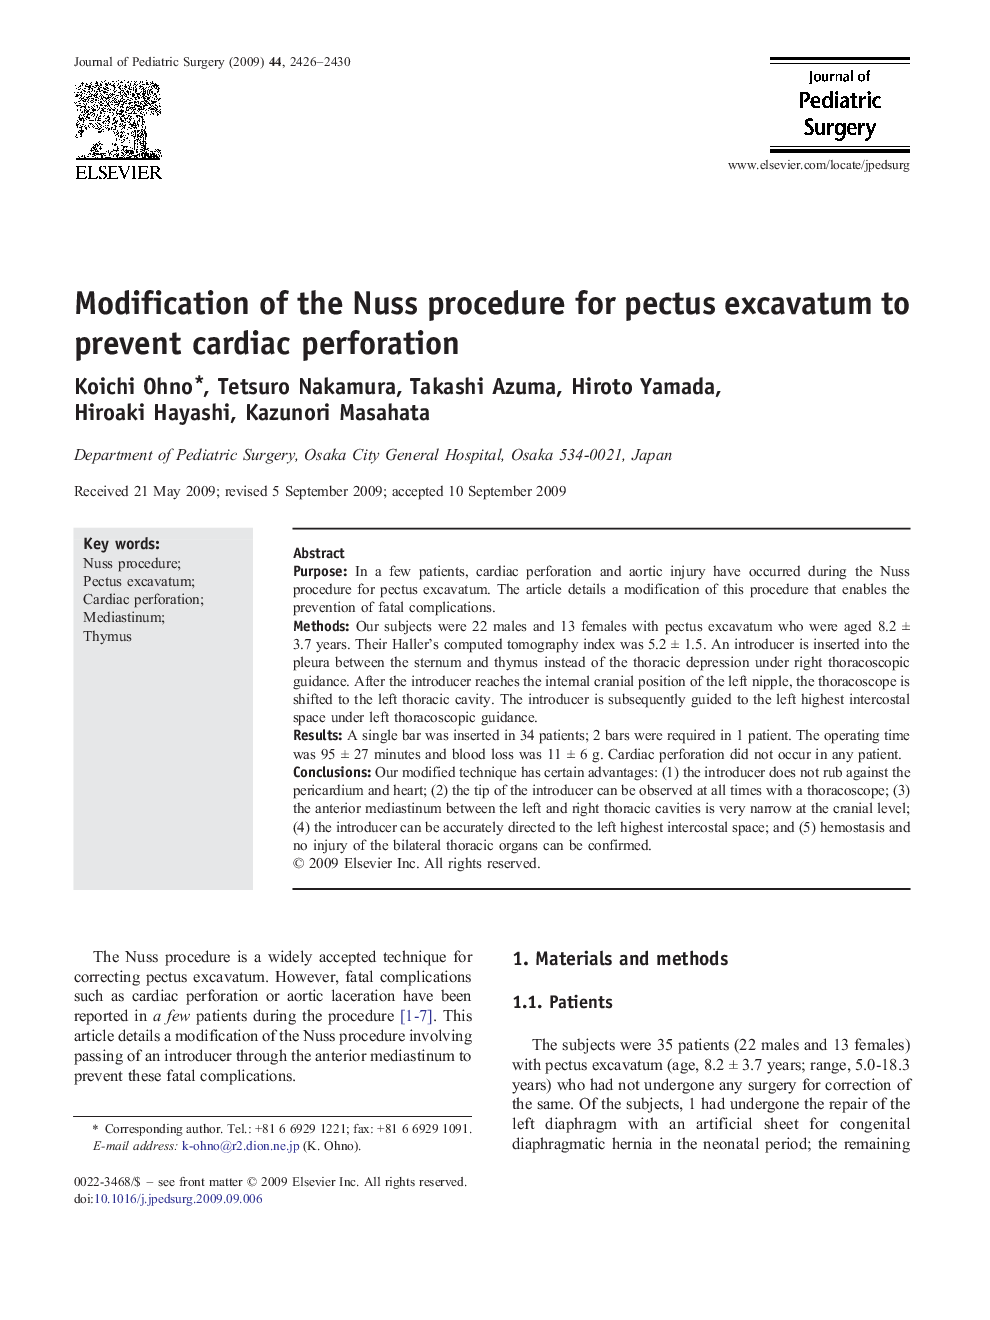 Modification of the Nuss procedure for pectus excavatum to prevent cardiac perforation